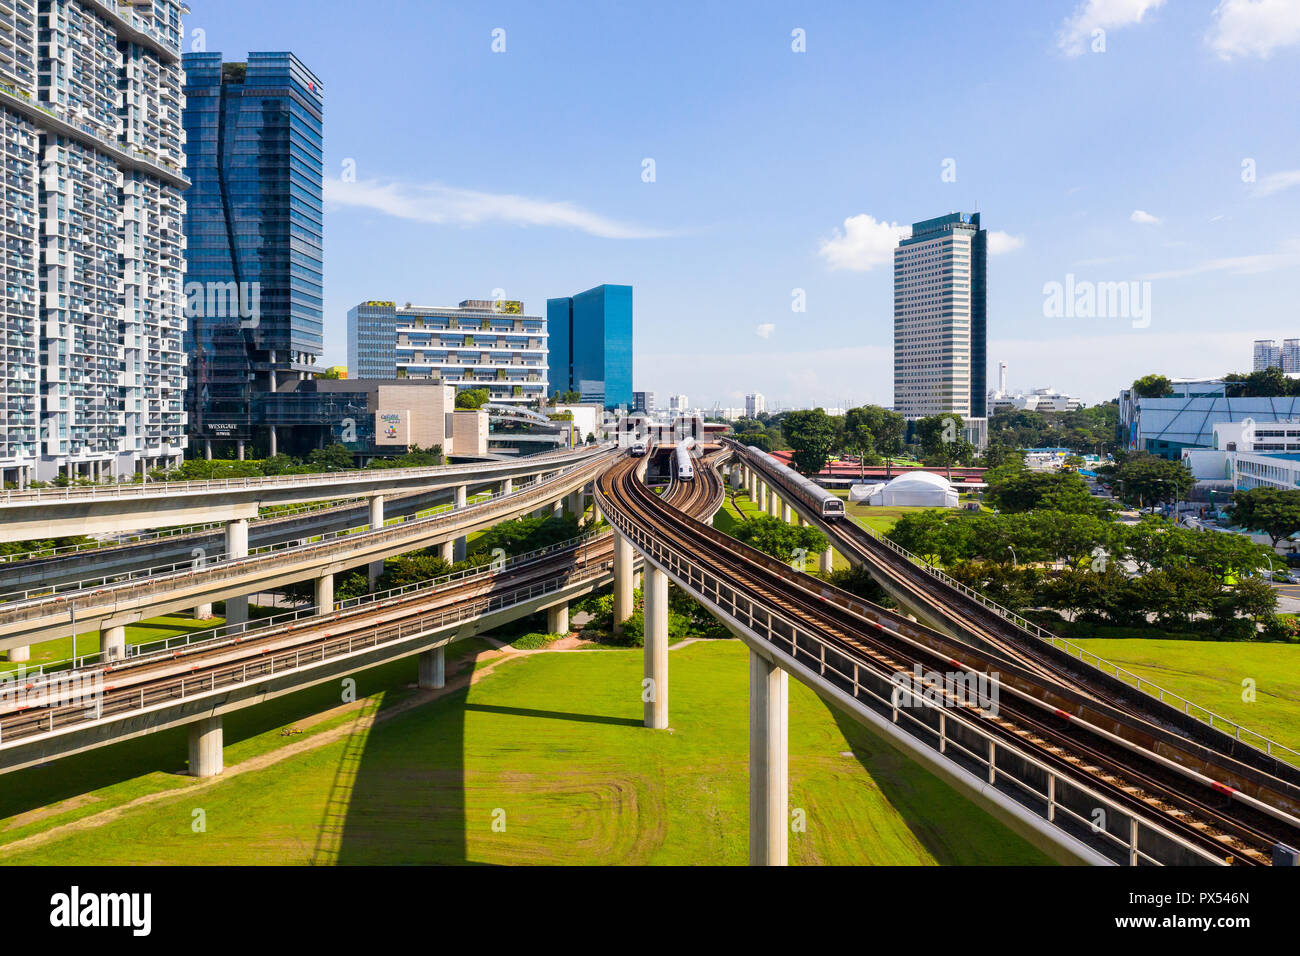 Vue aérienne de plusieurs voies ferrées à l'Est de Jurong, espace pour devenir quartier central des affaires de Singapour dans l'avenir. Banque D'Images